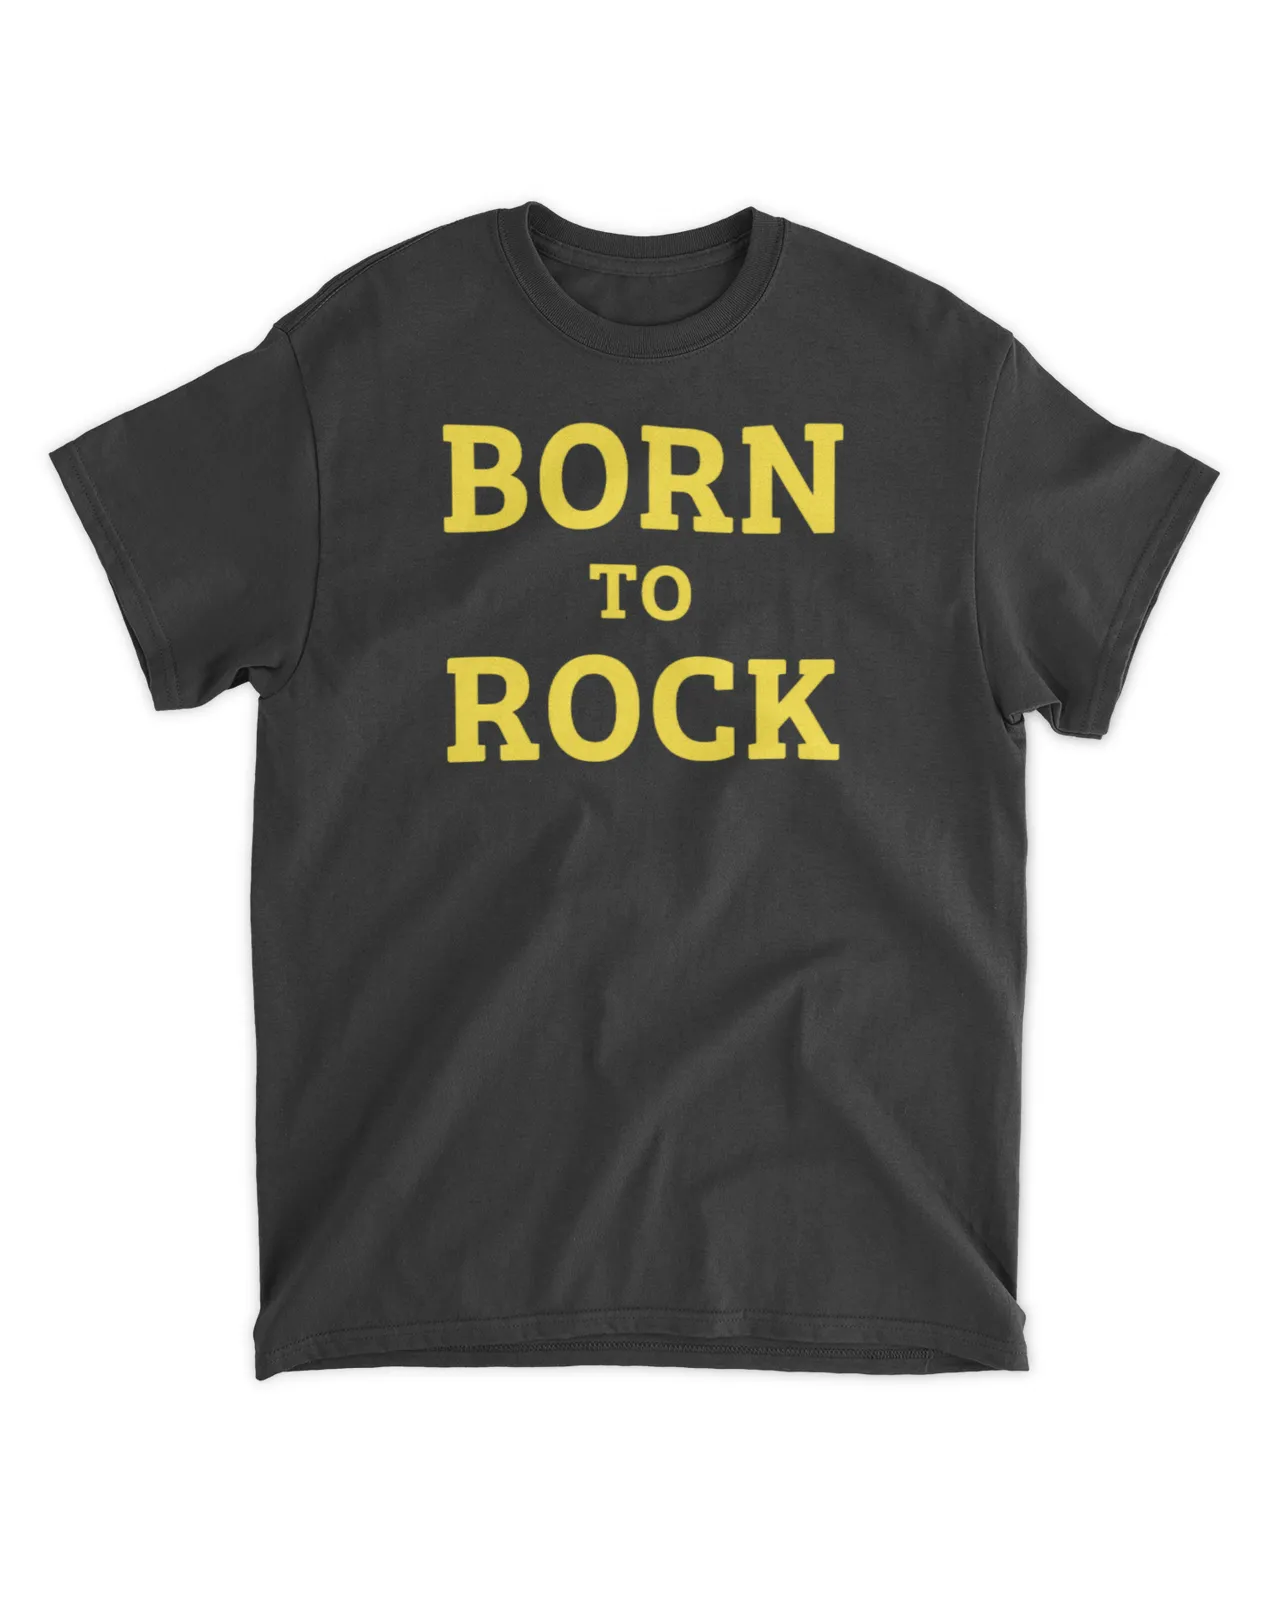  Born to rock shirt